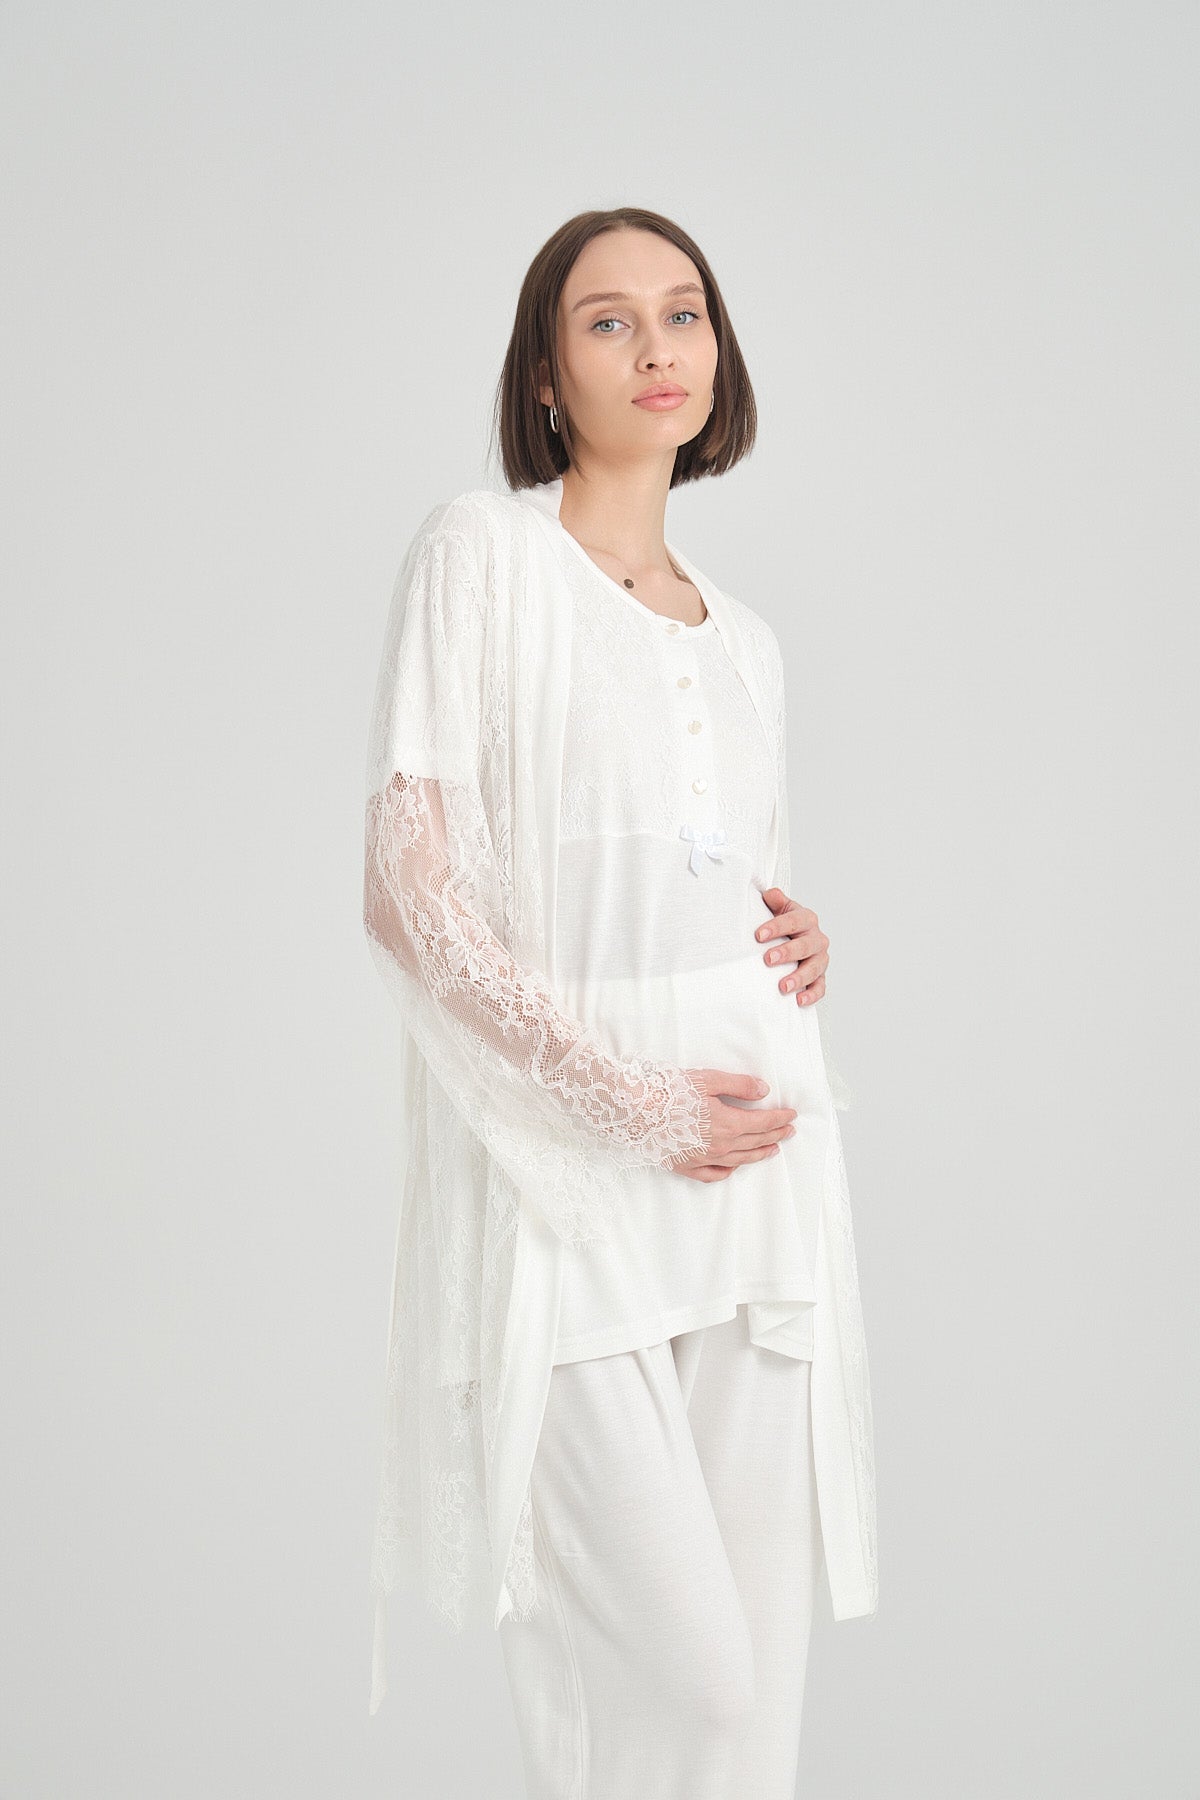 Lace Detailed 3-Pieces Maternity & Nursing Pajamas With Robe Ecru - 2366